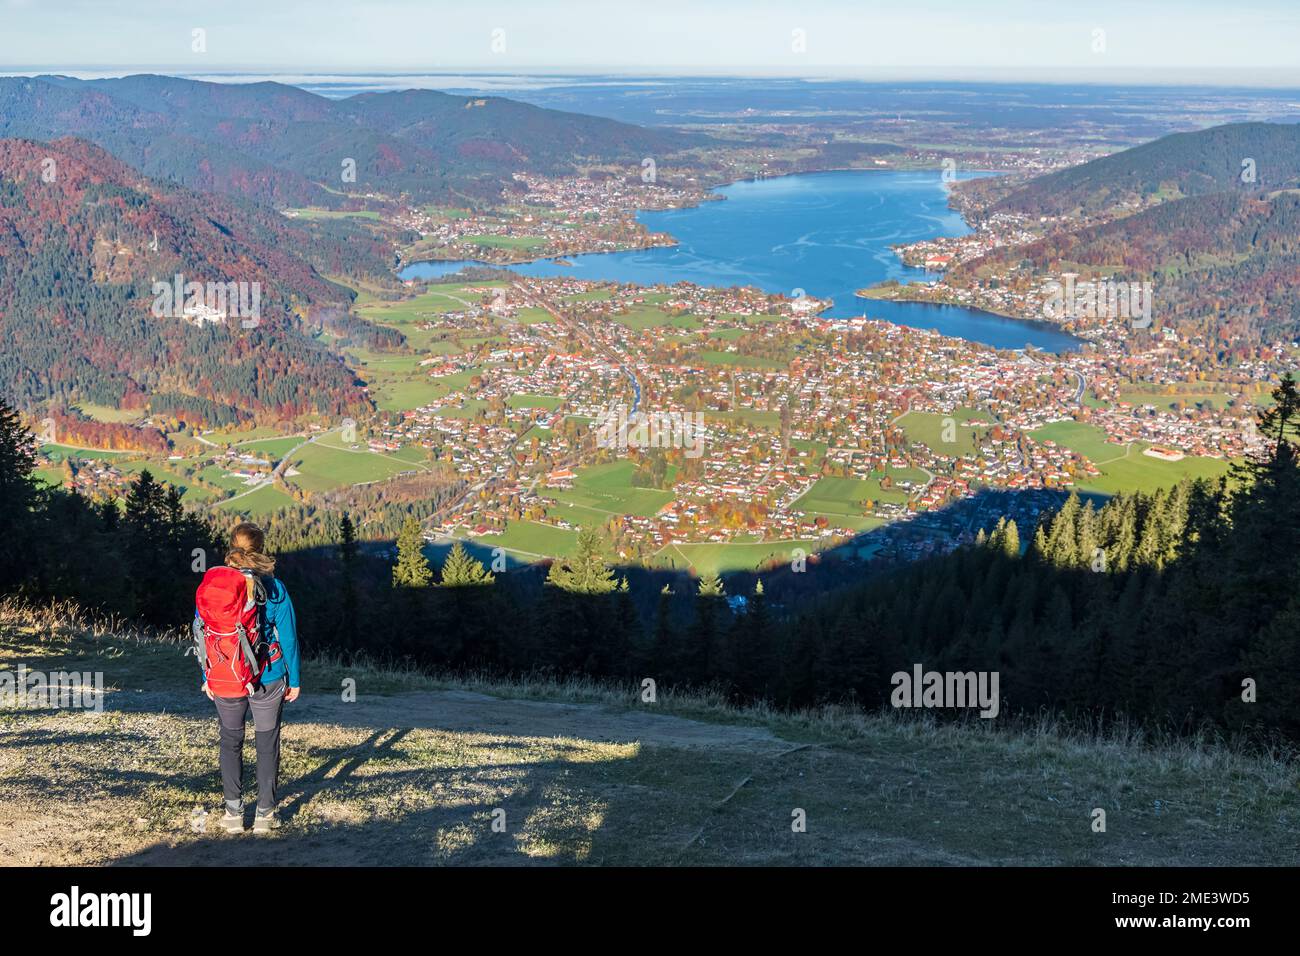 Germania, Baviera, Rottach-Egern, escursionista femminile ammirando la vista del lago Tegernsee e delle città circostanti dalla cima del monte Wallberg Foto Stock